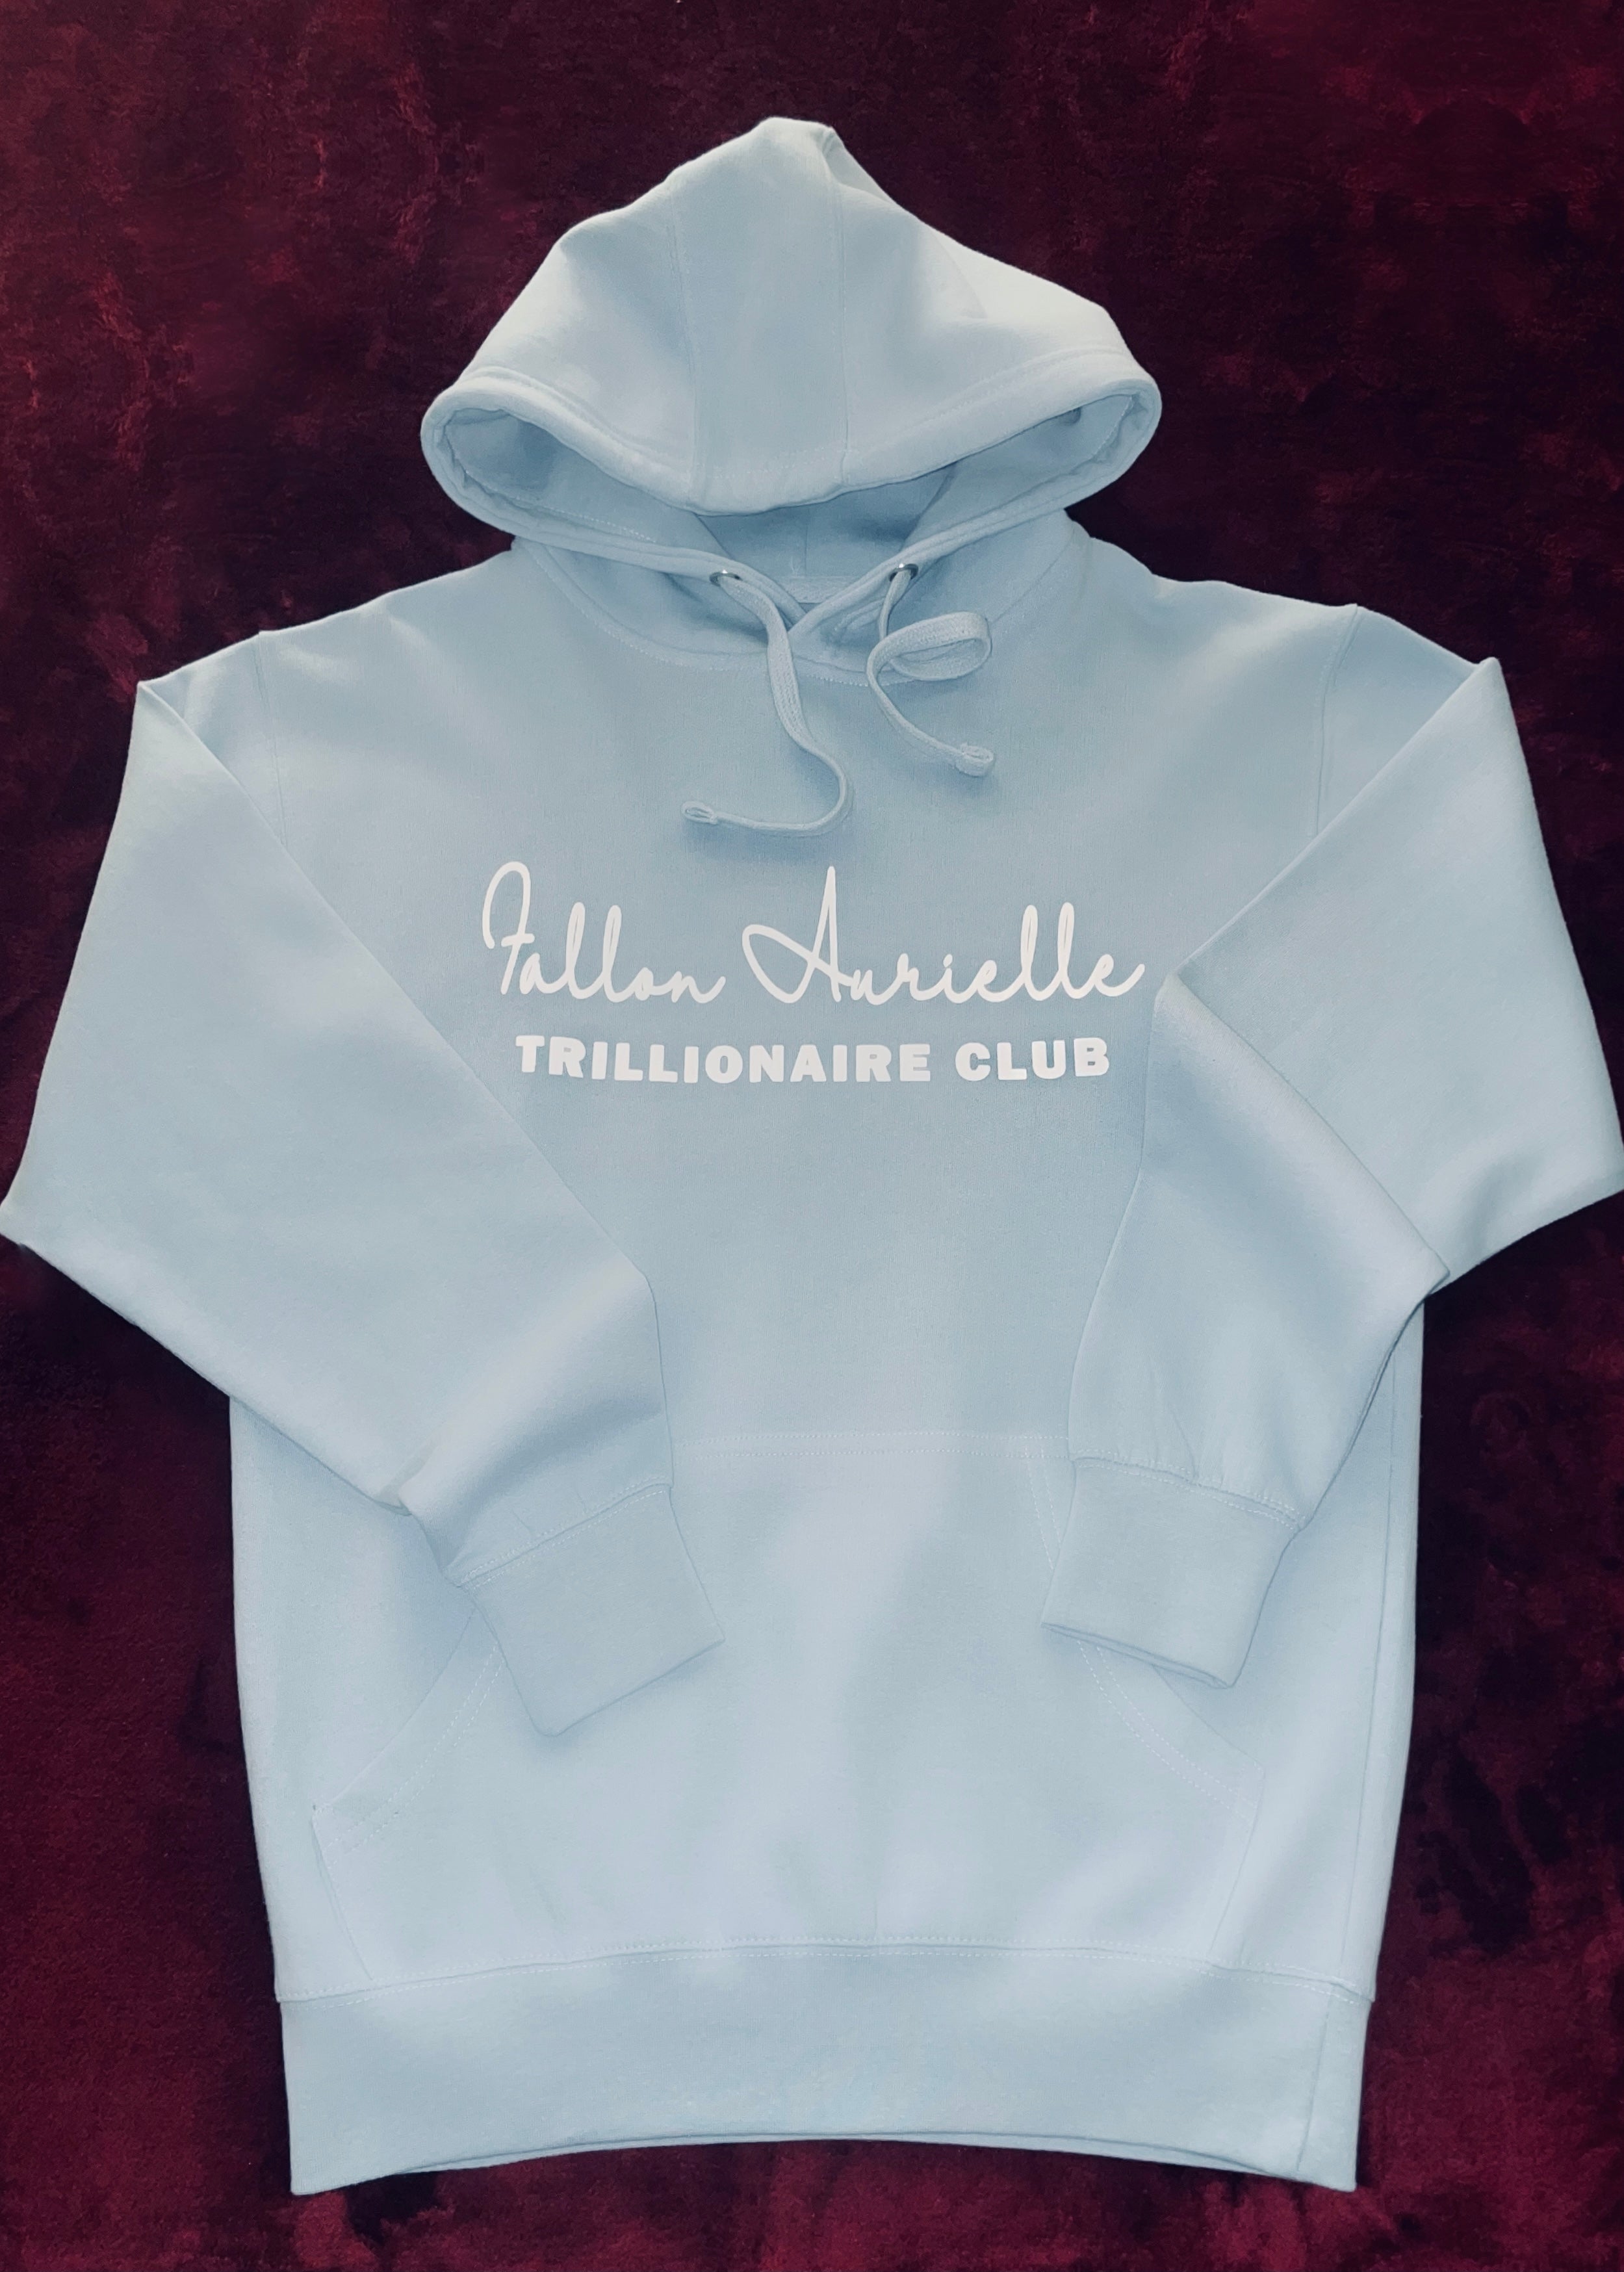 Fallon Aurielle Unisex Signature Trillionaire Club Jogging Set (Powder Blue & White)